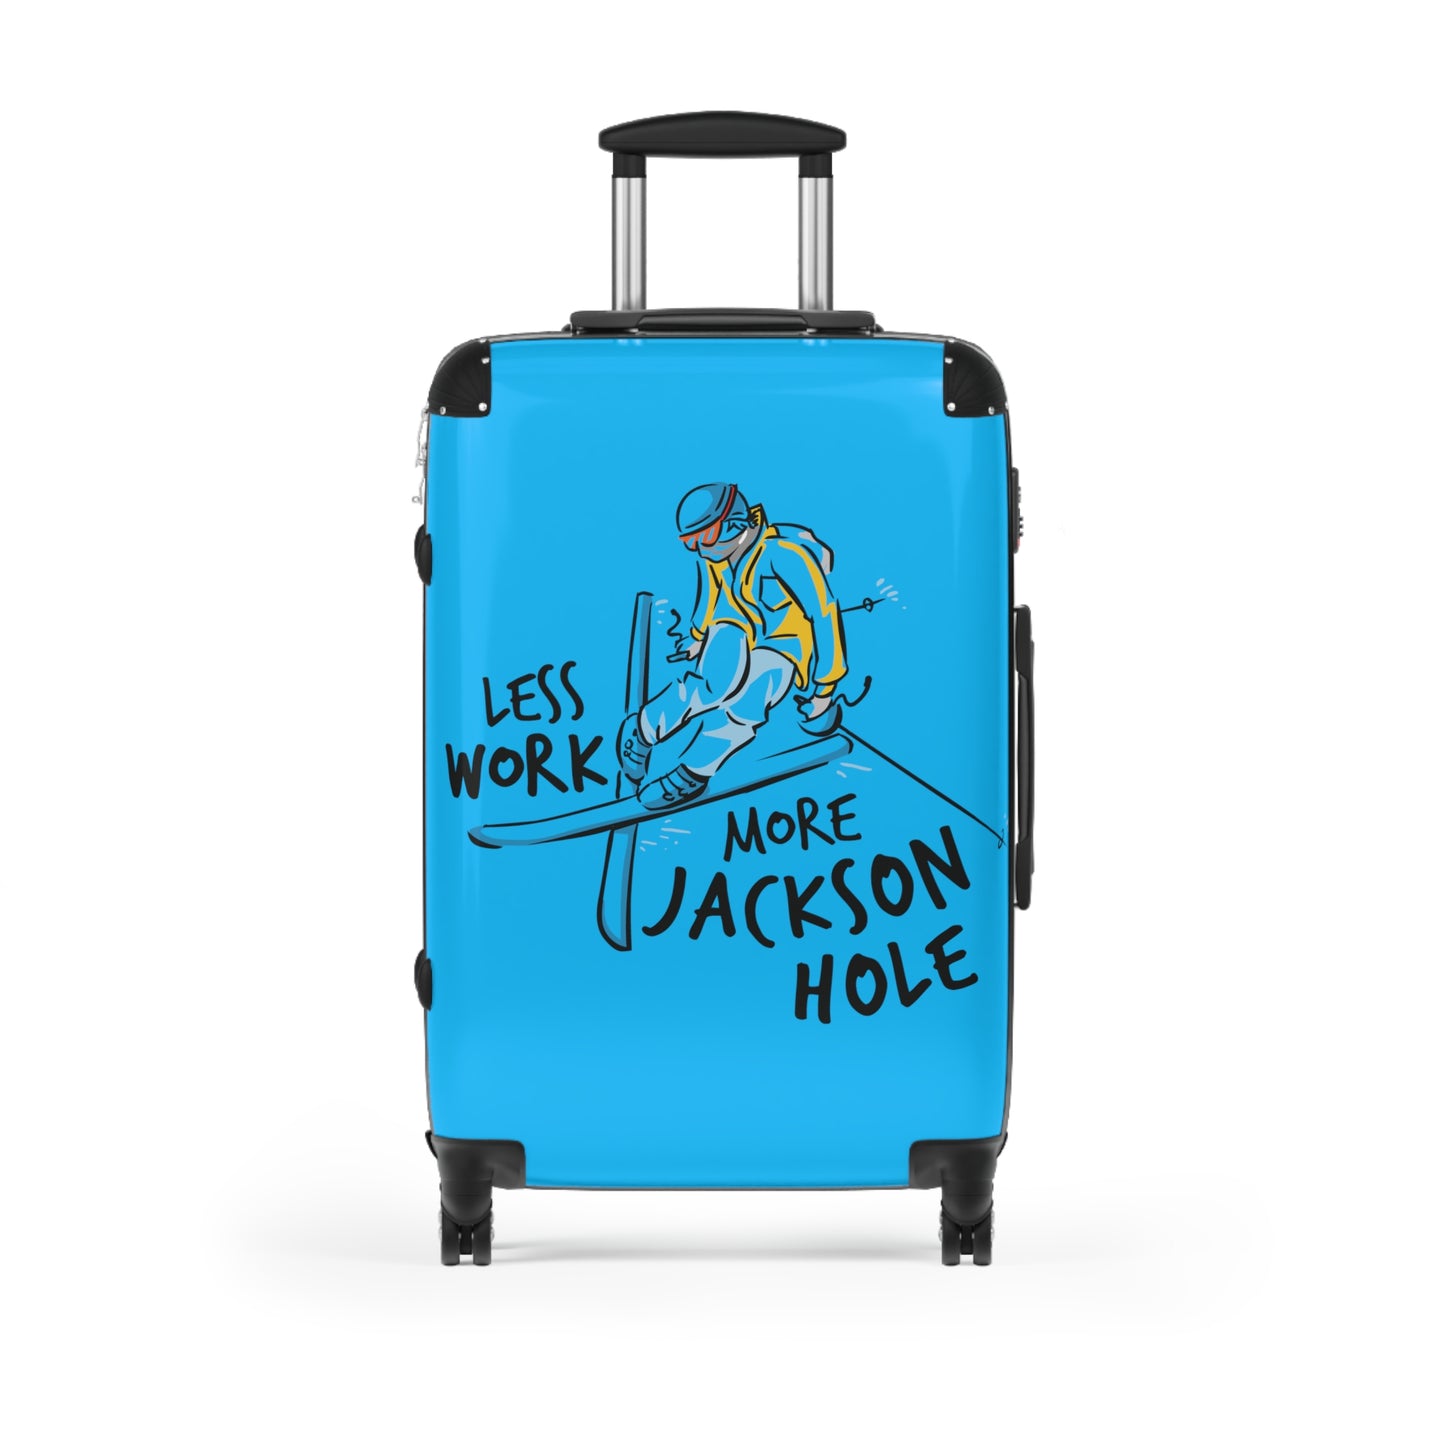 Less Work More Jackson Hole Custom Luggage